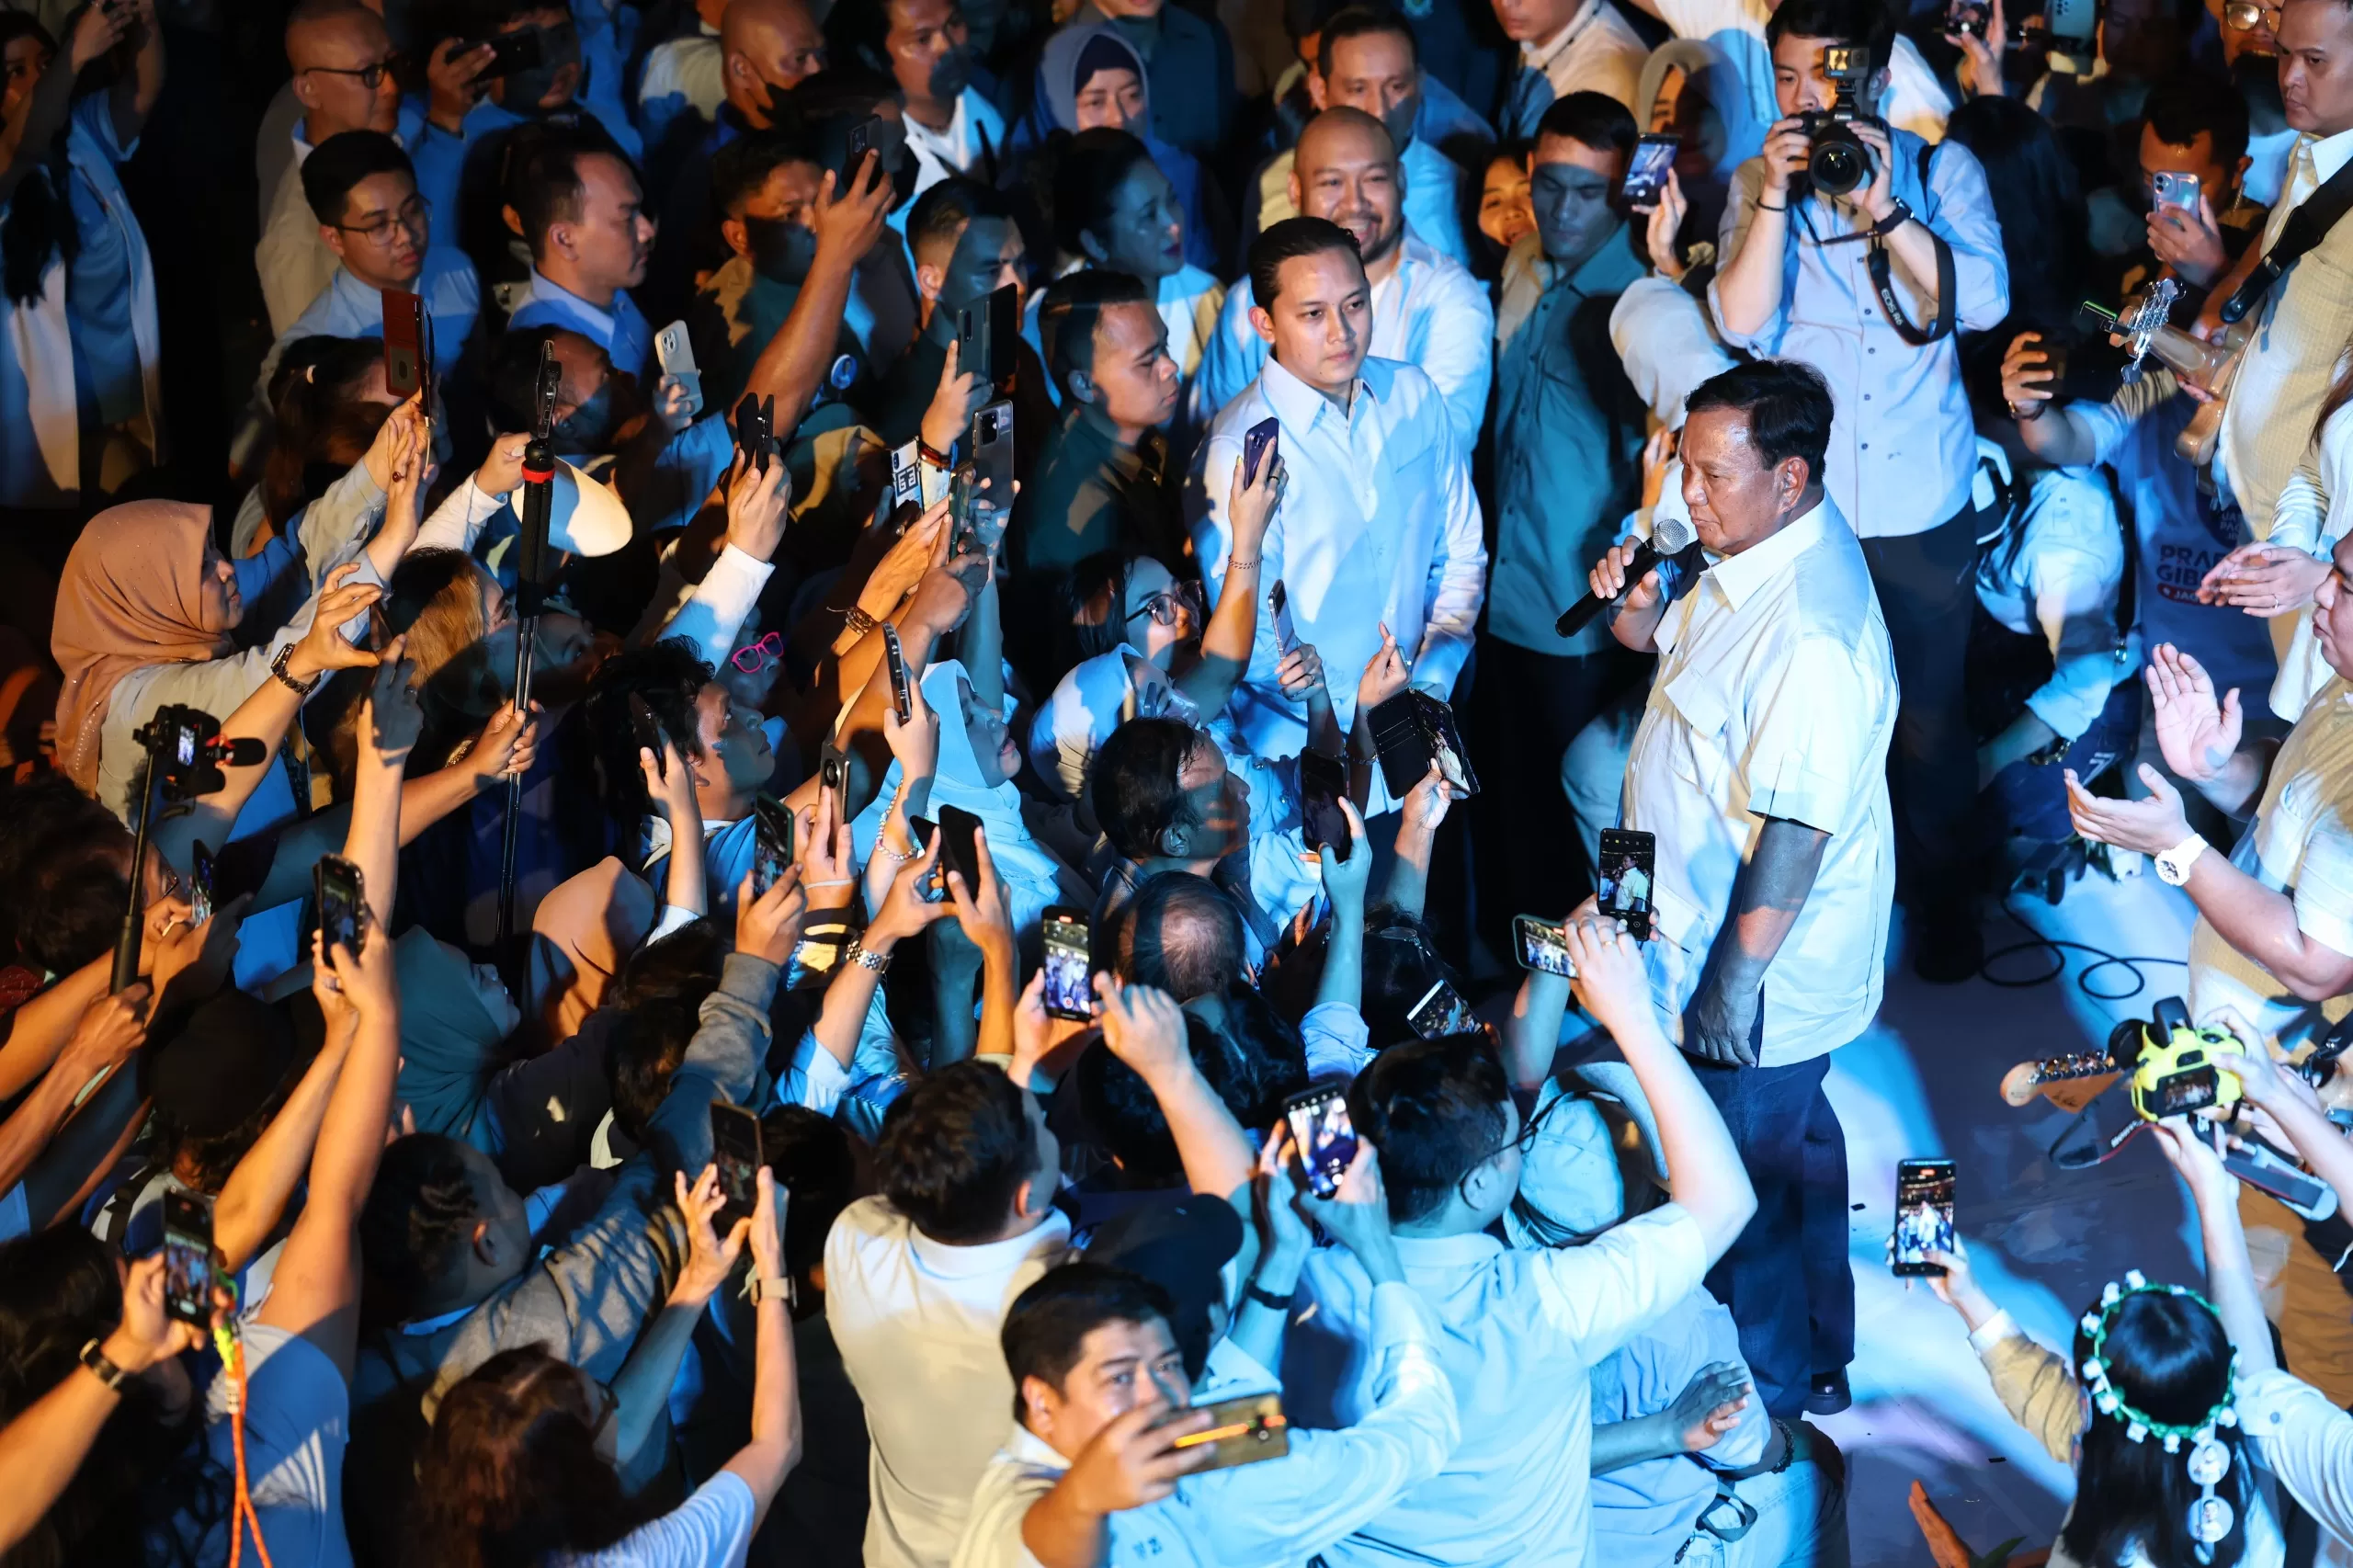 Hadiri Acara 'Rabu Biru', Prabowo: Kita Butuh Keberlanjutan Pembangunan